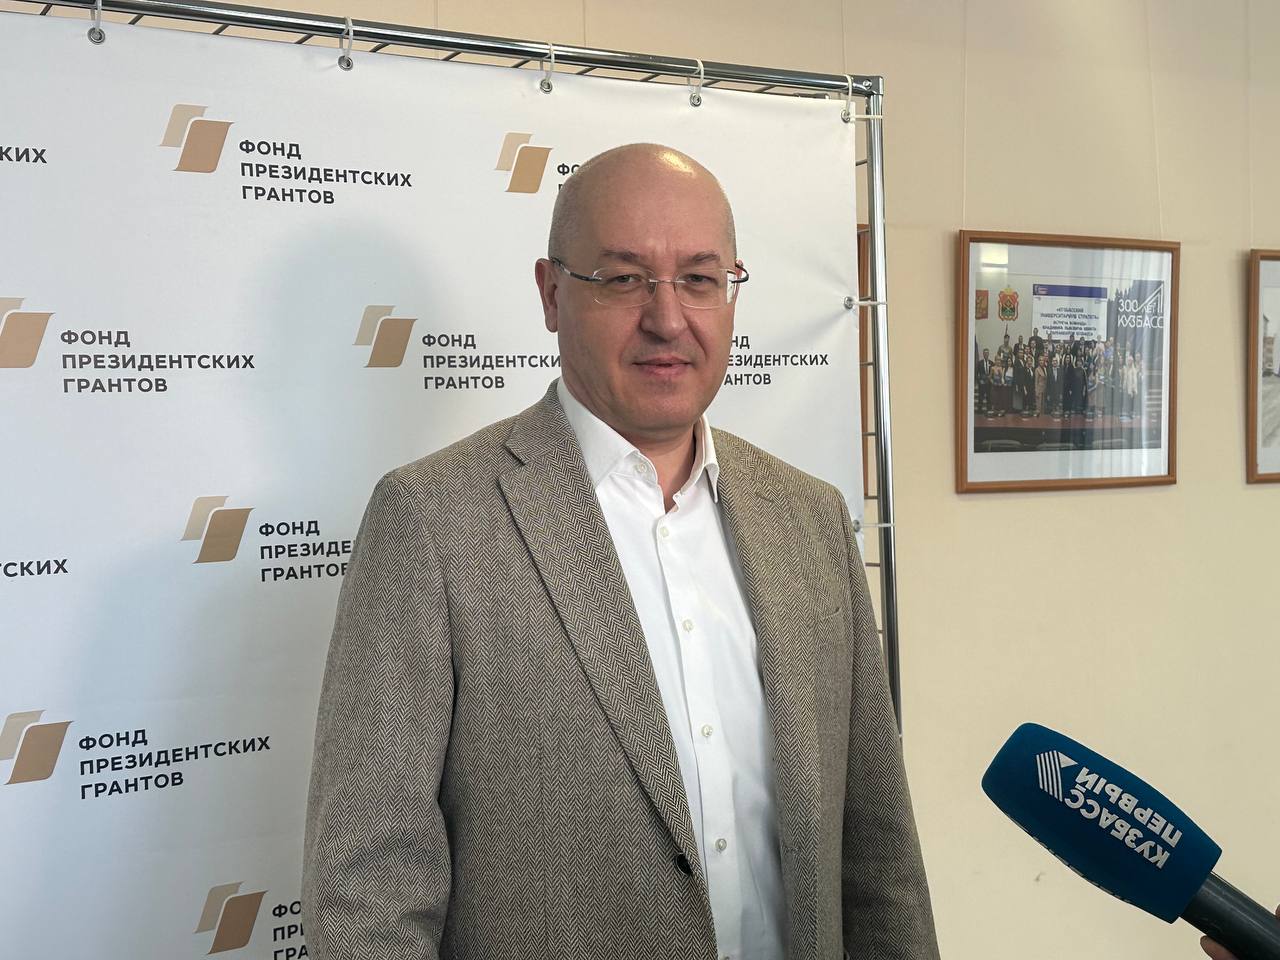 Директор Фонда президентских грантов: в Кузбассе поддерживают инициативных людей